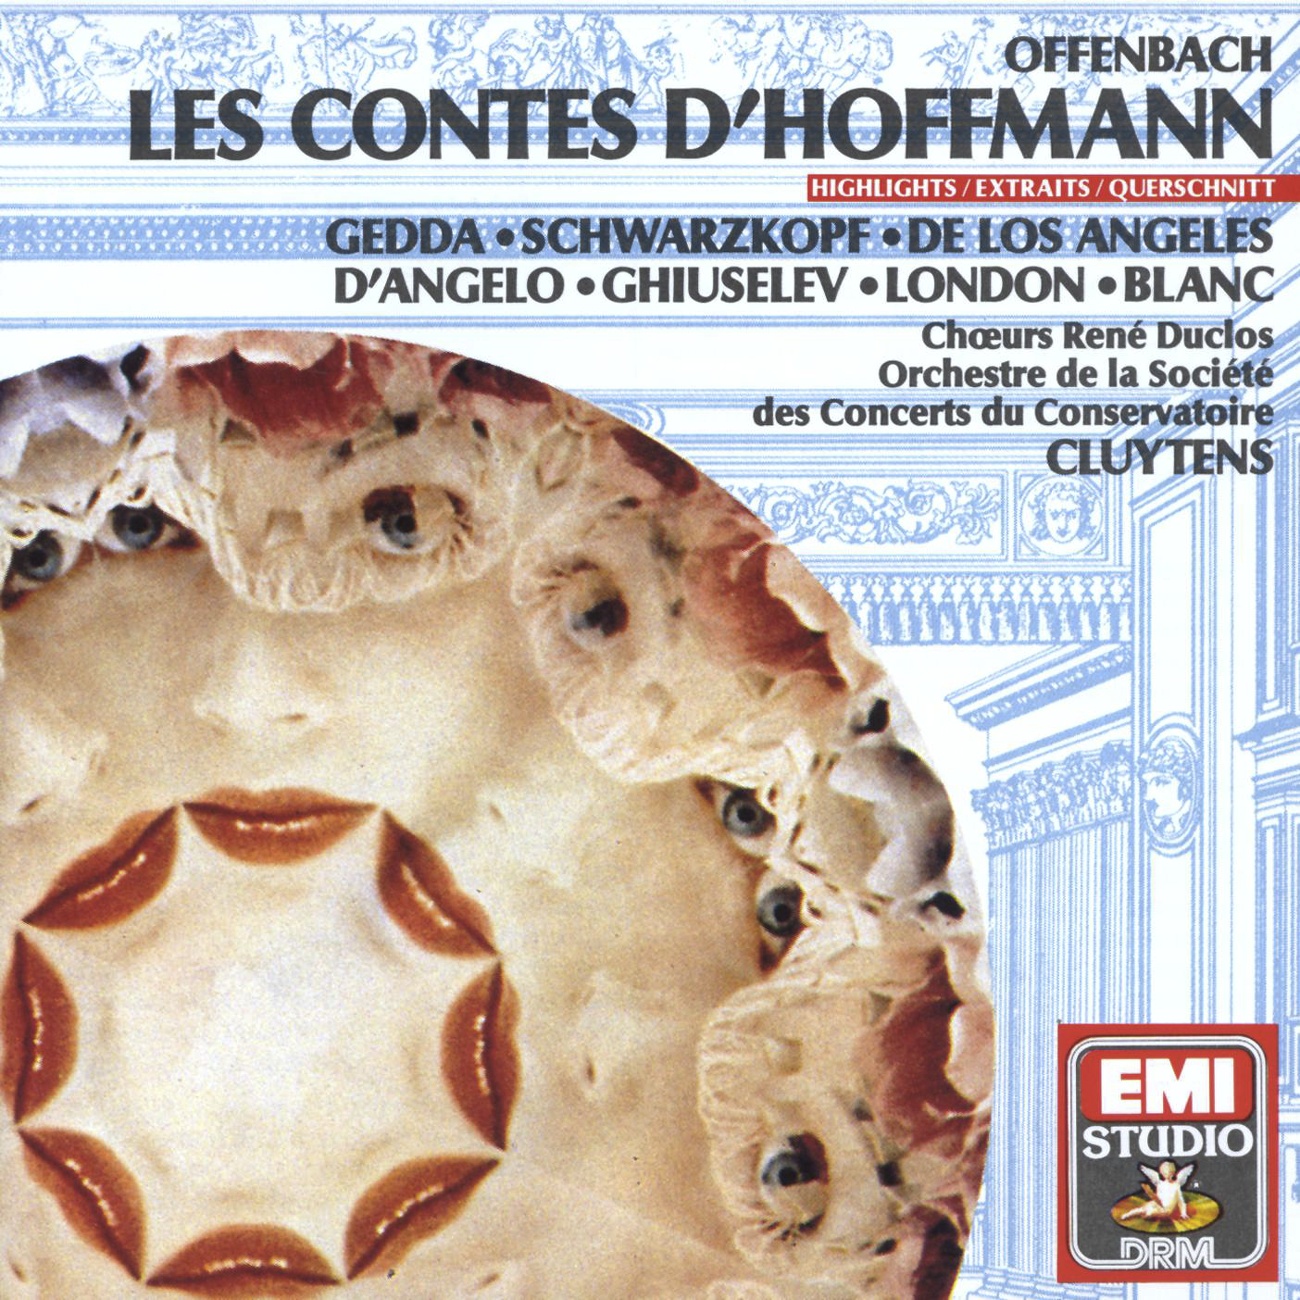 Dans les r les d' amoureux langoureux from Les Contes d' Hoffmann 1989 Digital Remaster